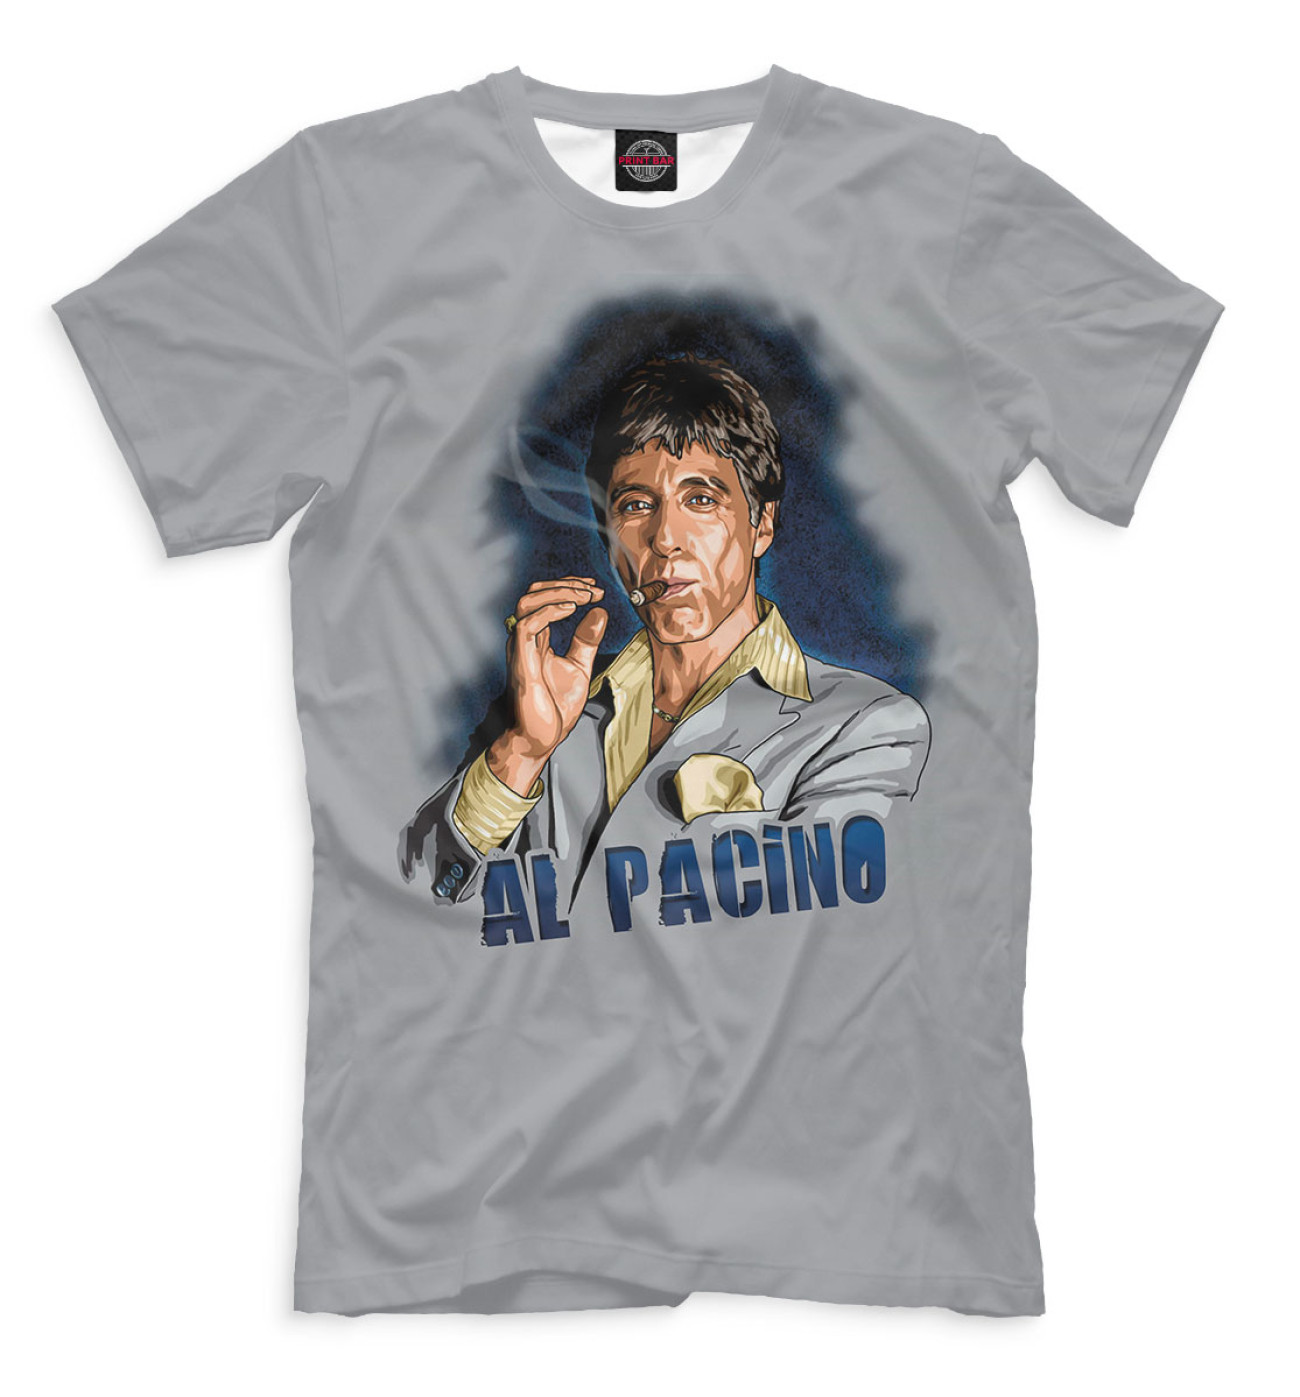 Мужская Футболка Al Pacino, артикул: PAC-854285-fut-2